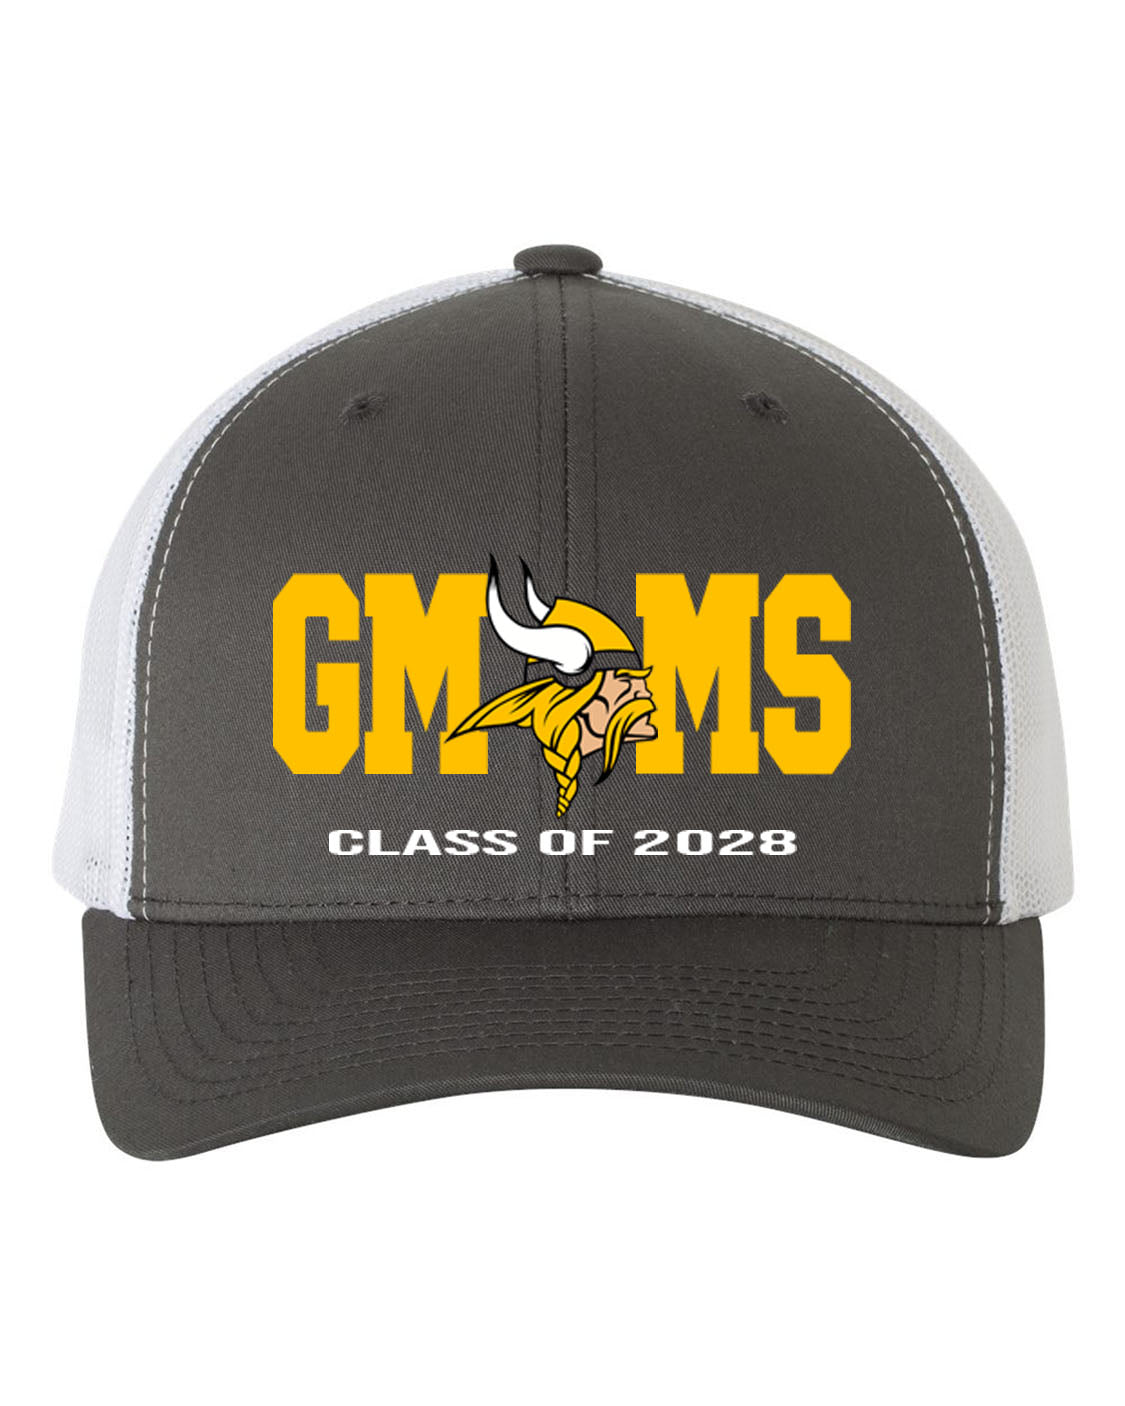 Glen Meadow Class of 2028 Trucker Hat